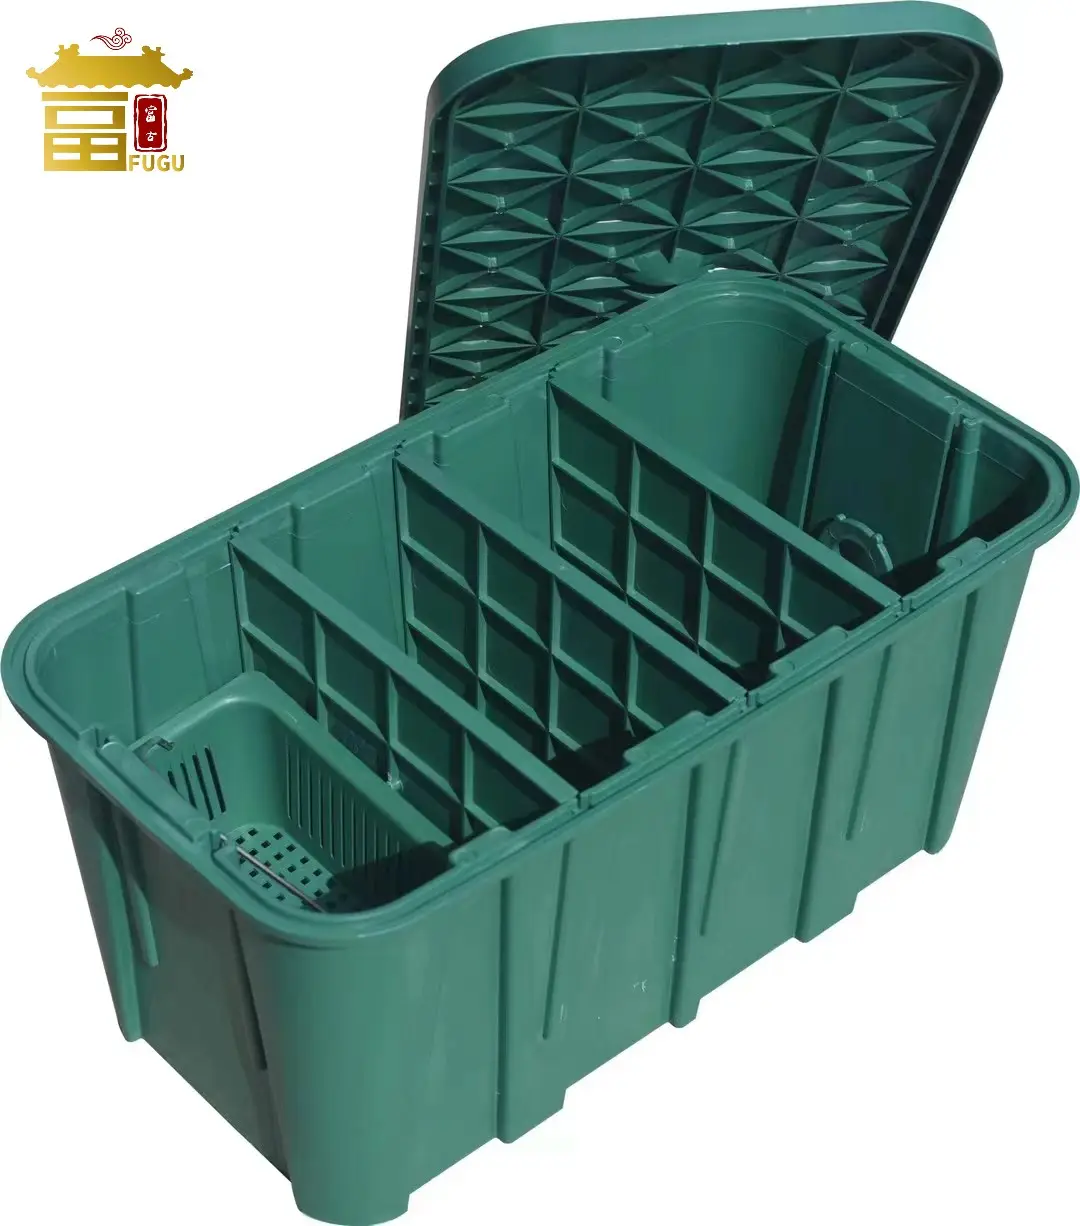 Novo Design Plástico PP PE Grease Trap para Cozinha Waste Filtering PP Intercepção Tanque para Tratamento de Esgoto